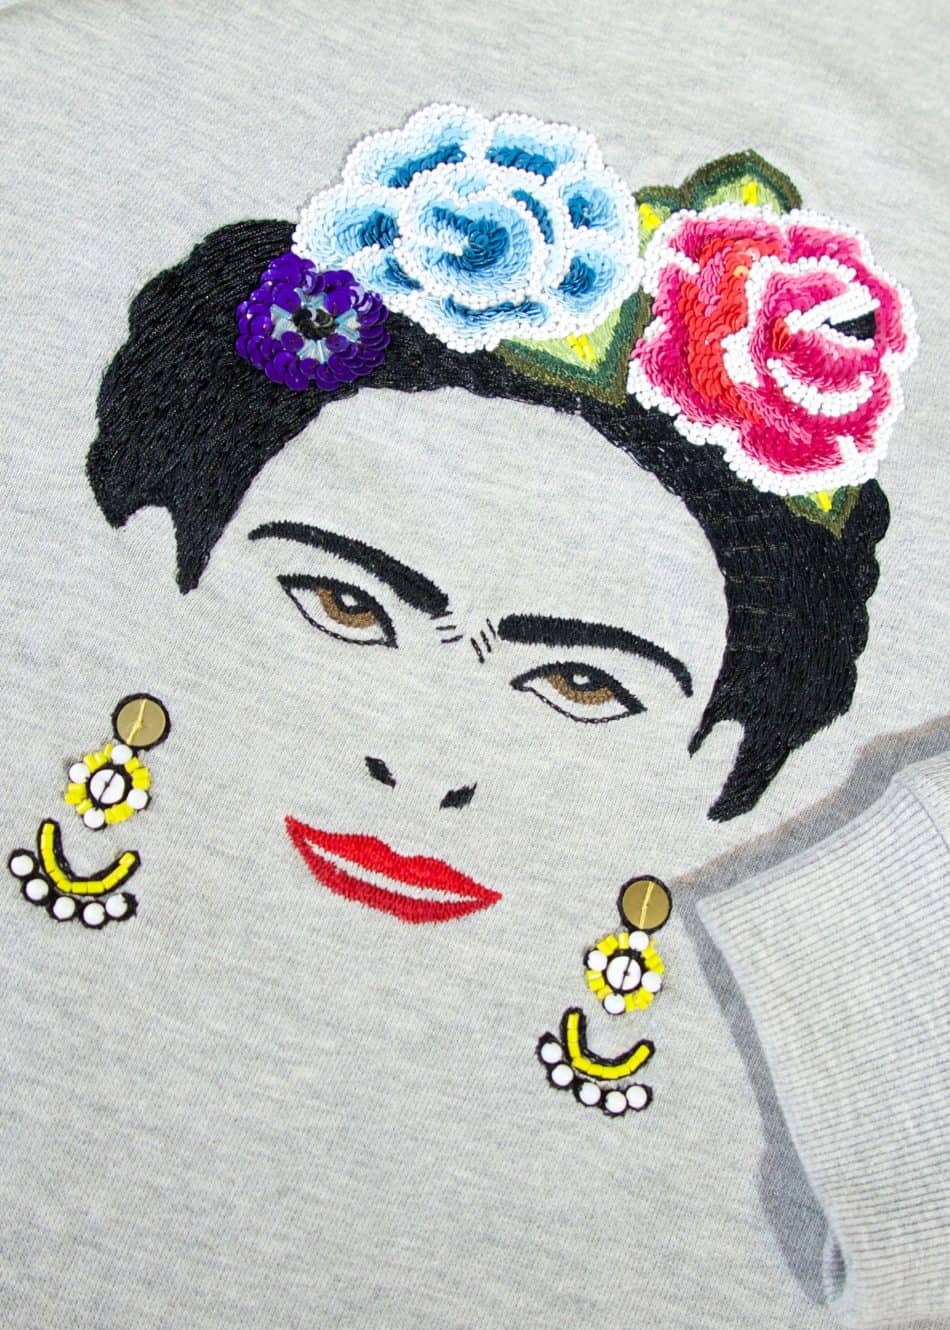 Frida sweatshirt